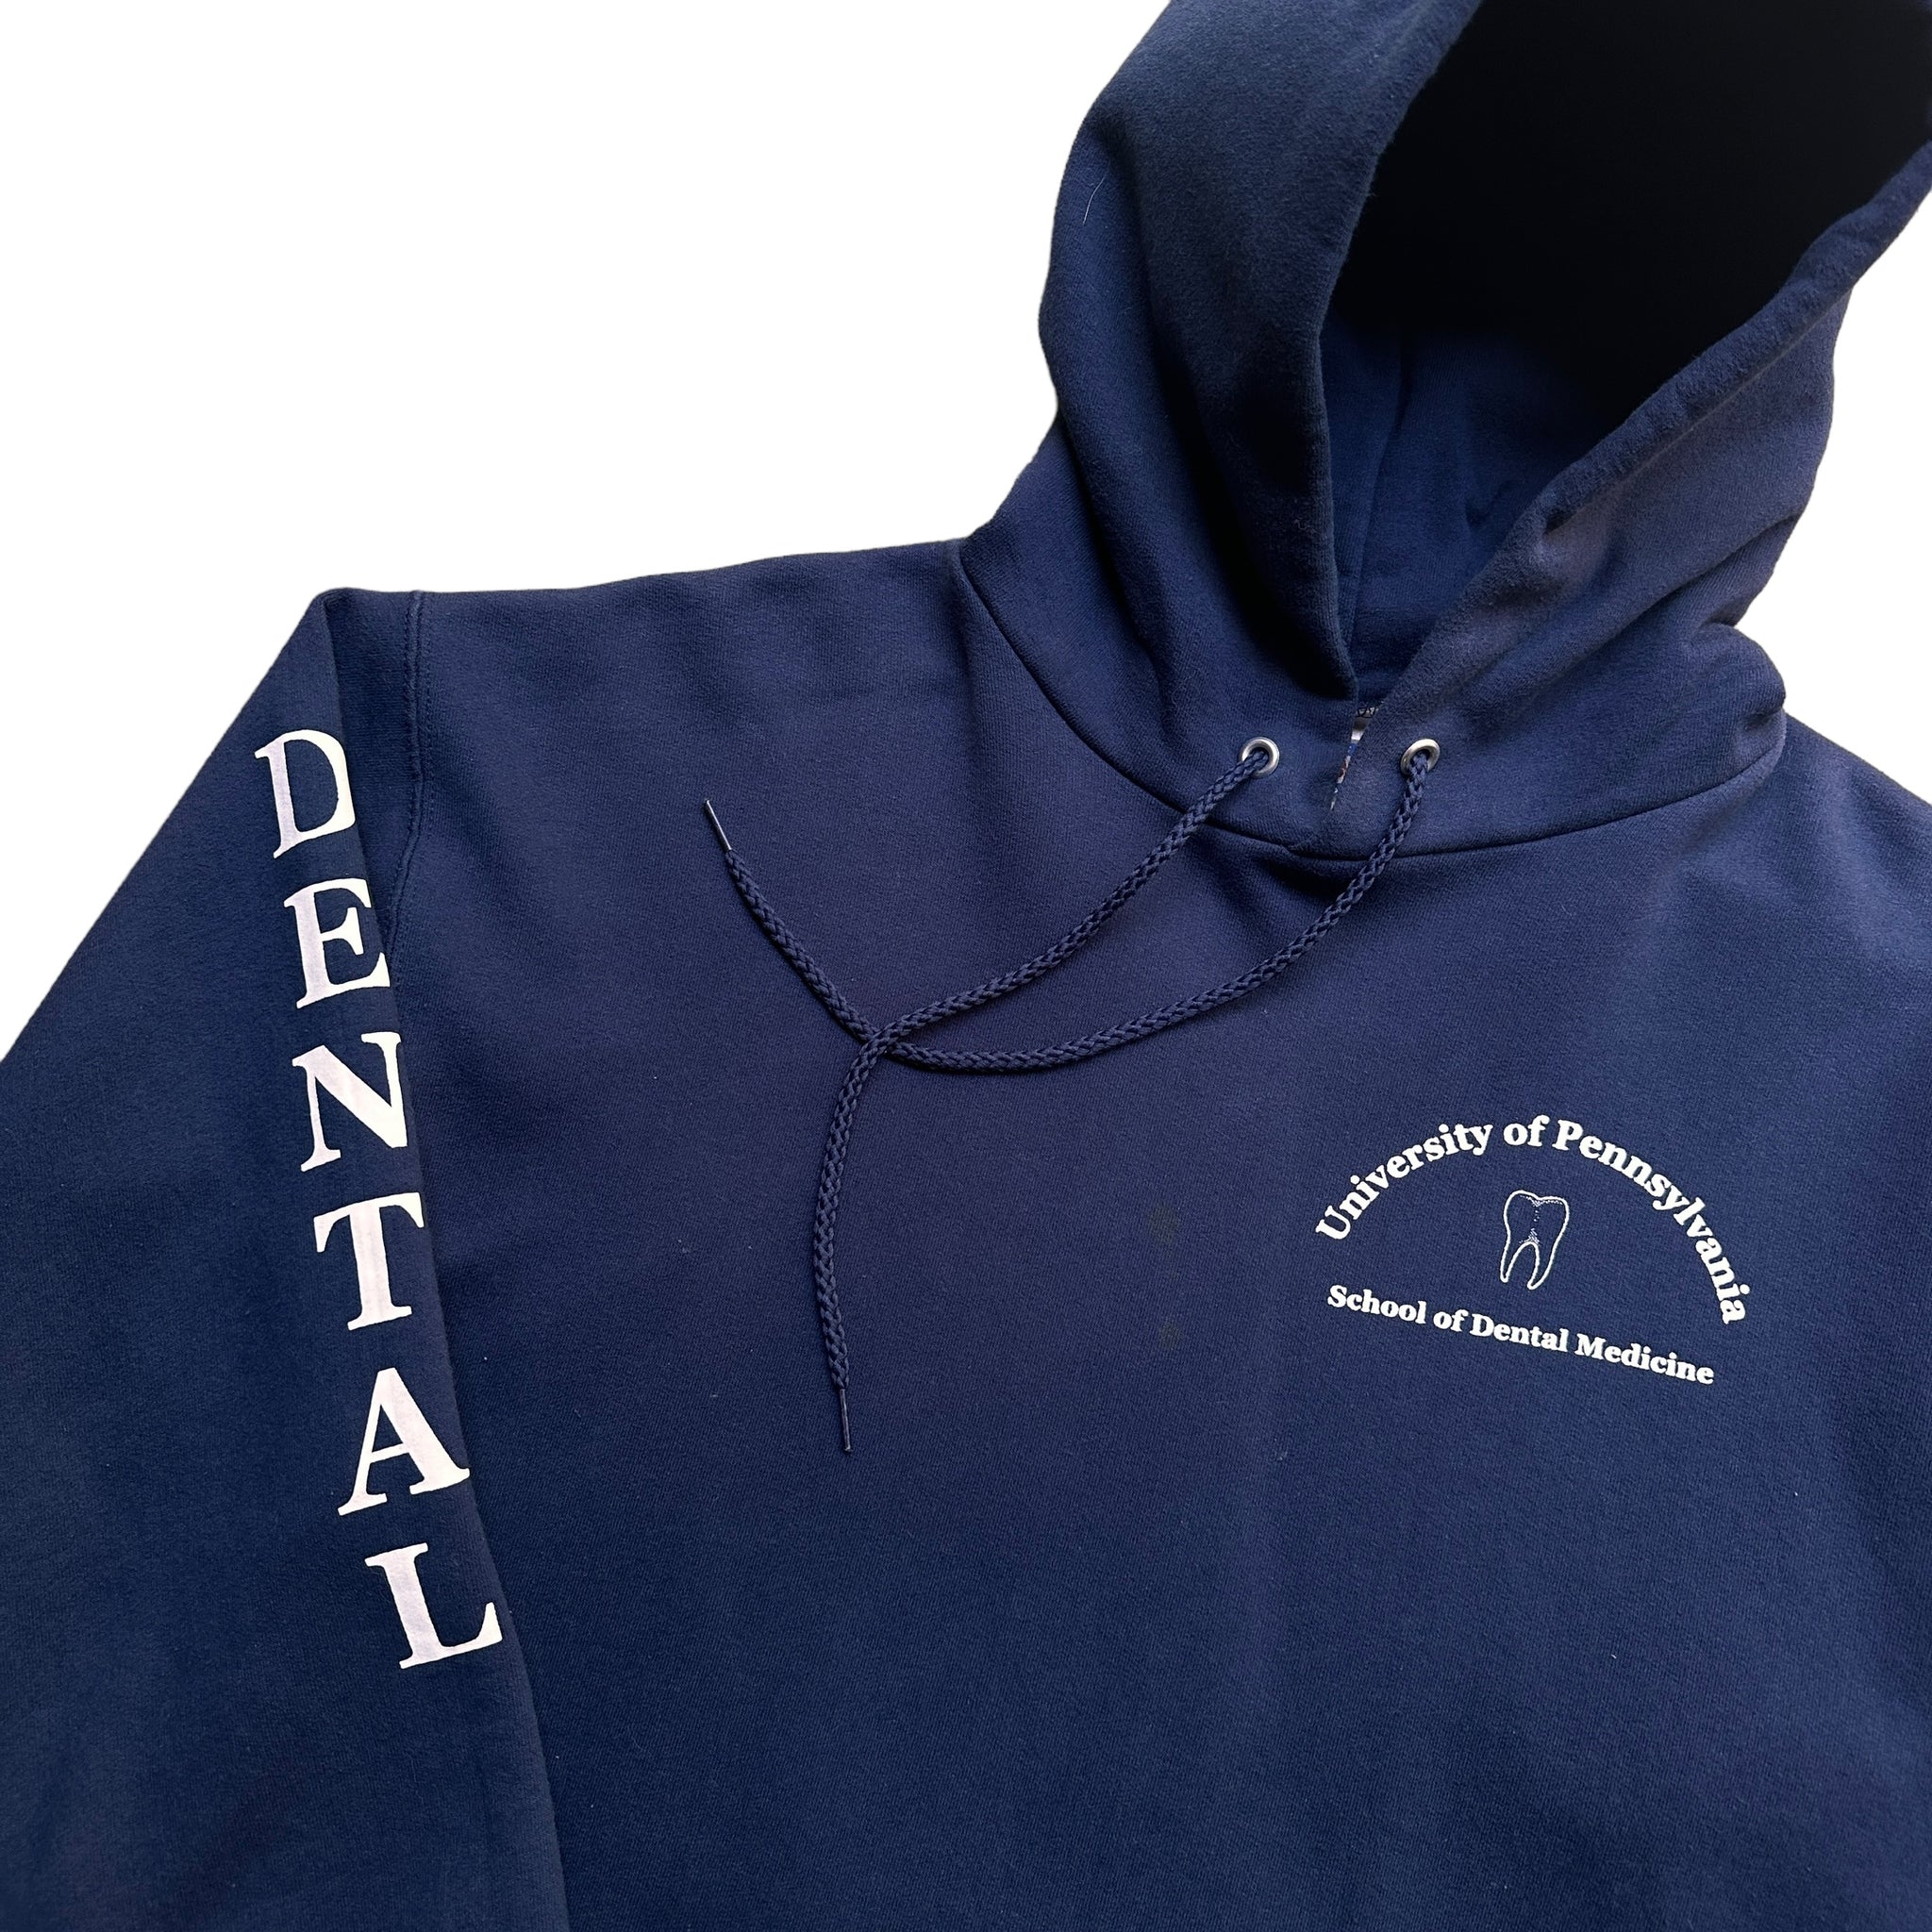 U Penn dental hoodie medium